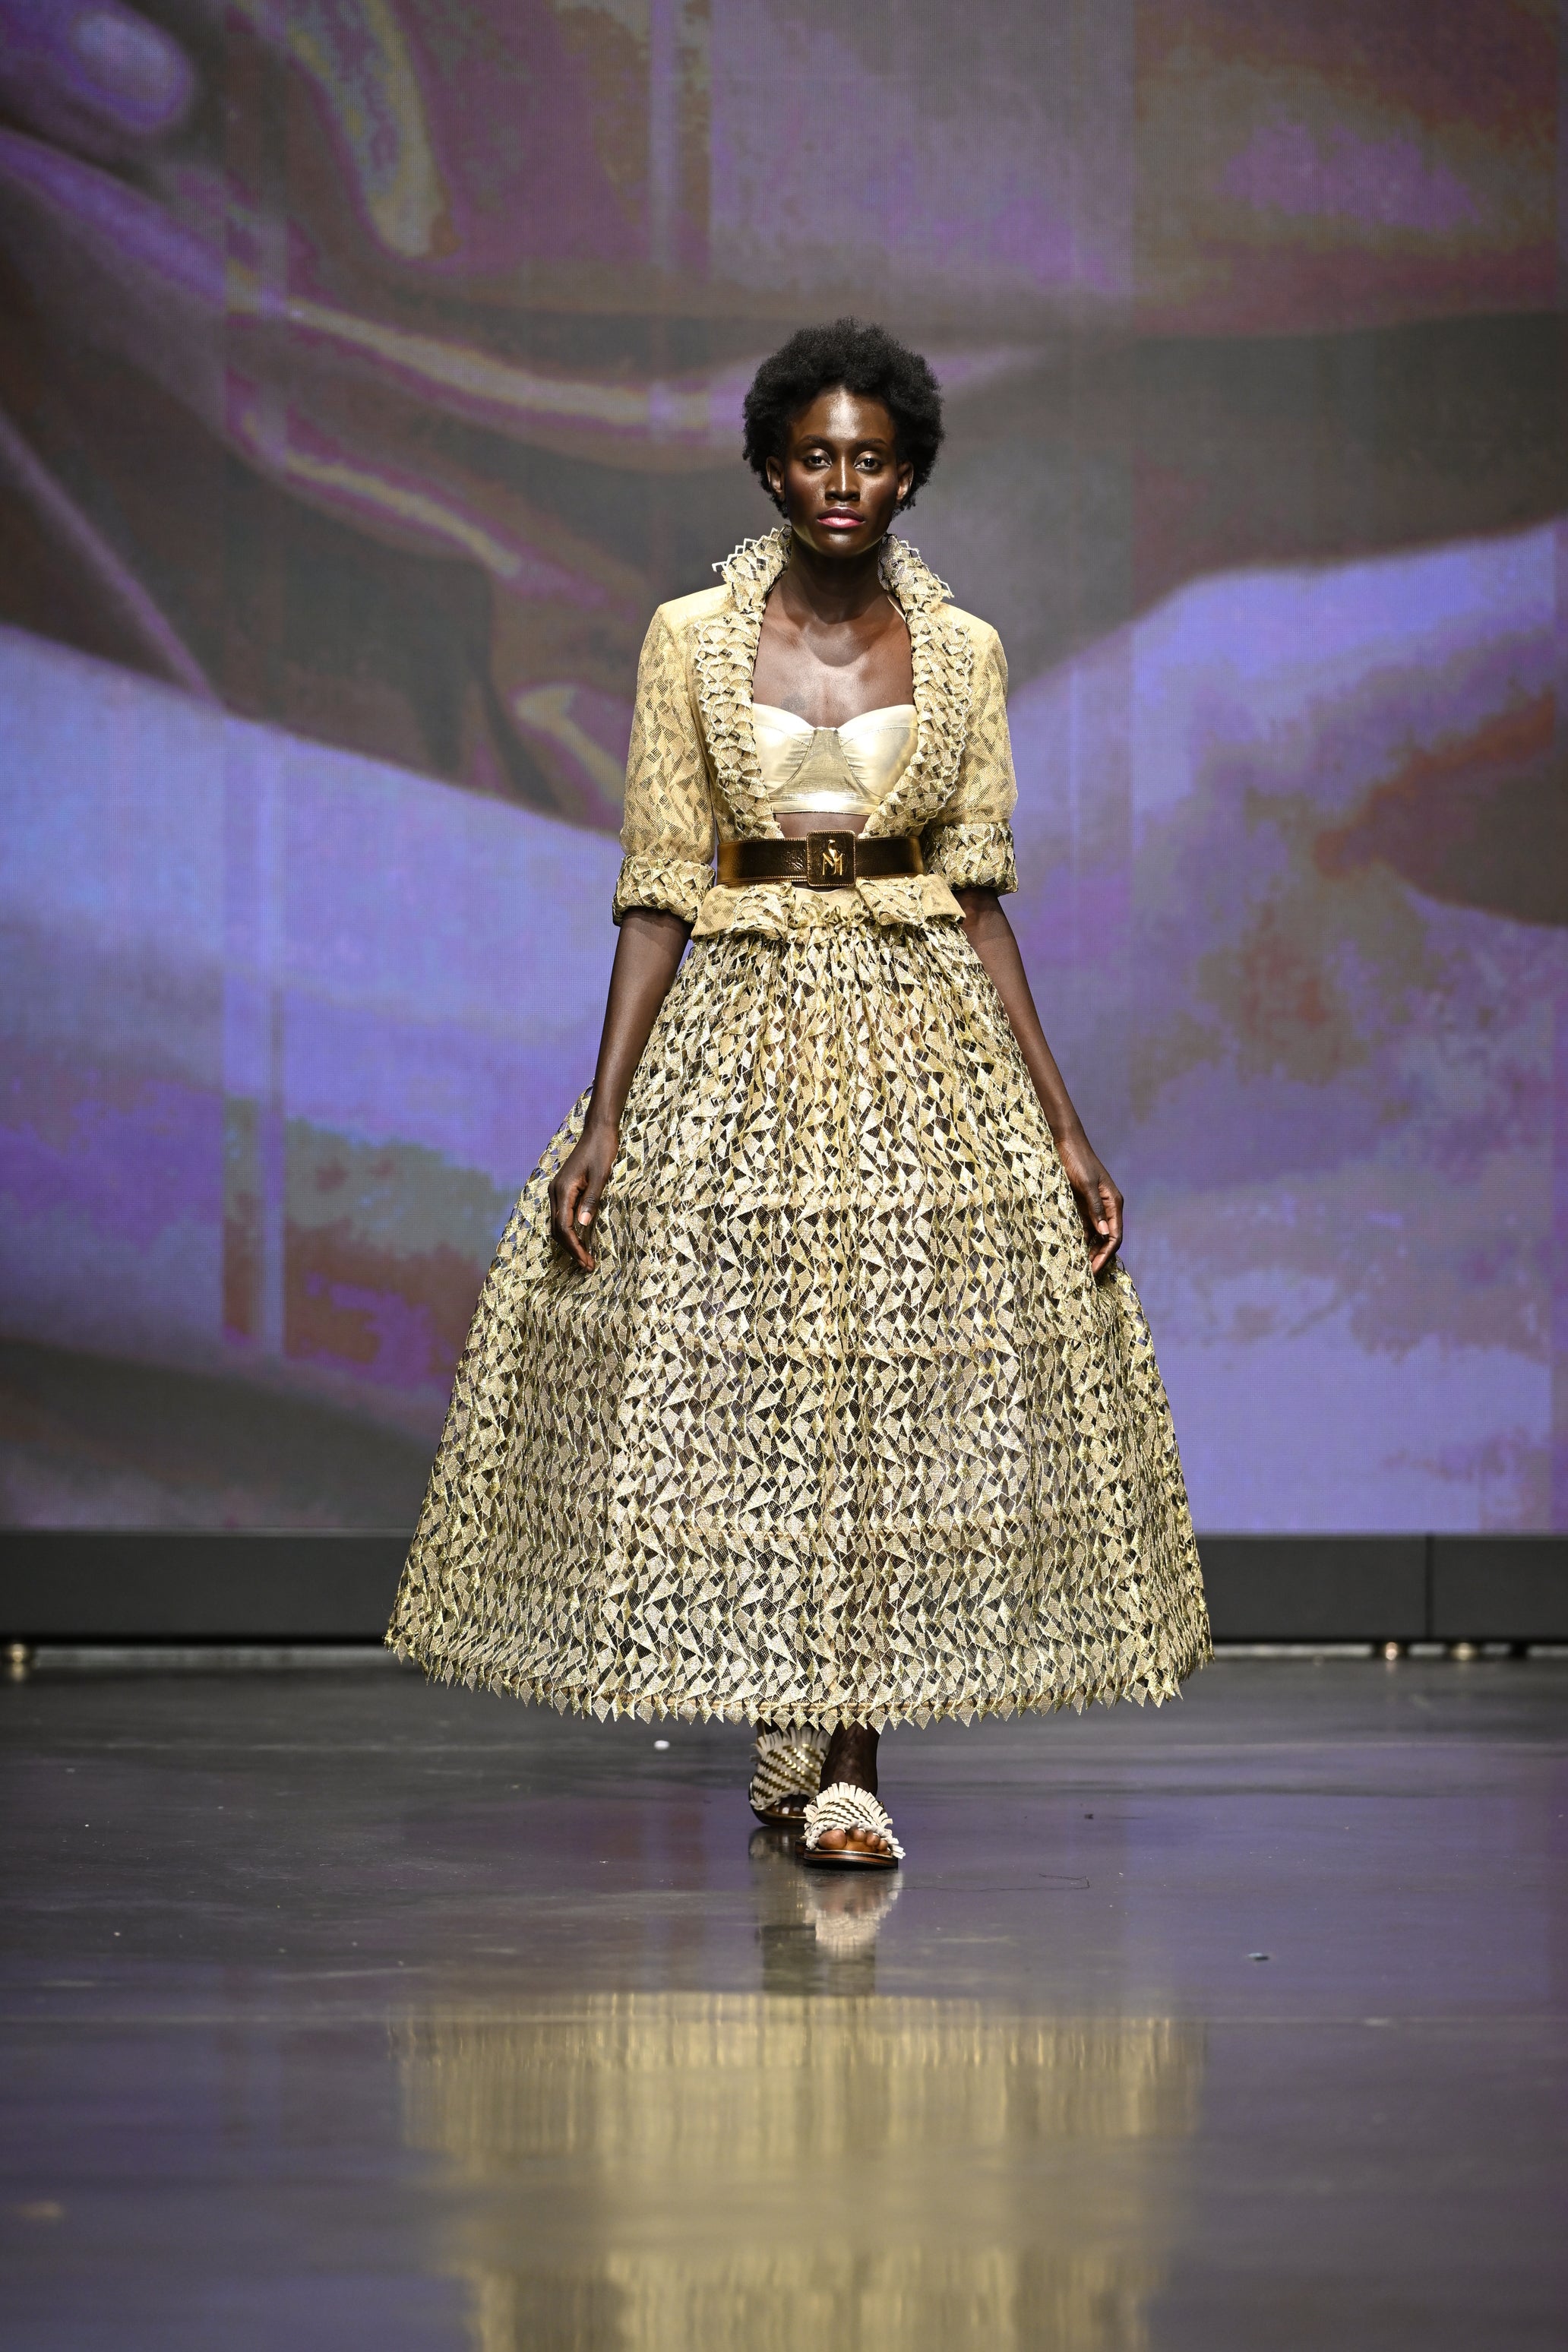 Moomaya Women's Printed Surplice Neckline Top, Long Sleeves Designer Cotton  Tops